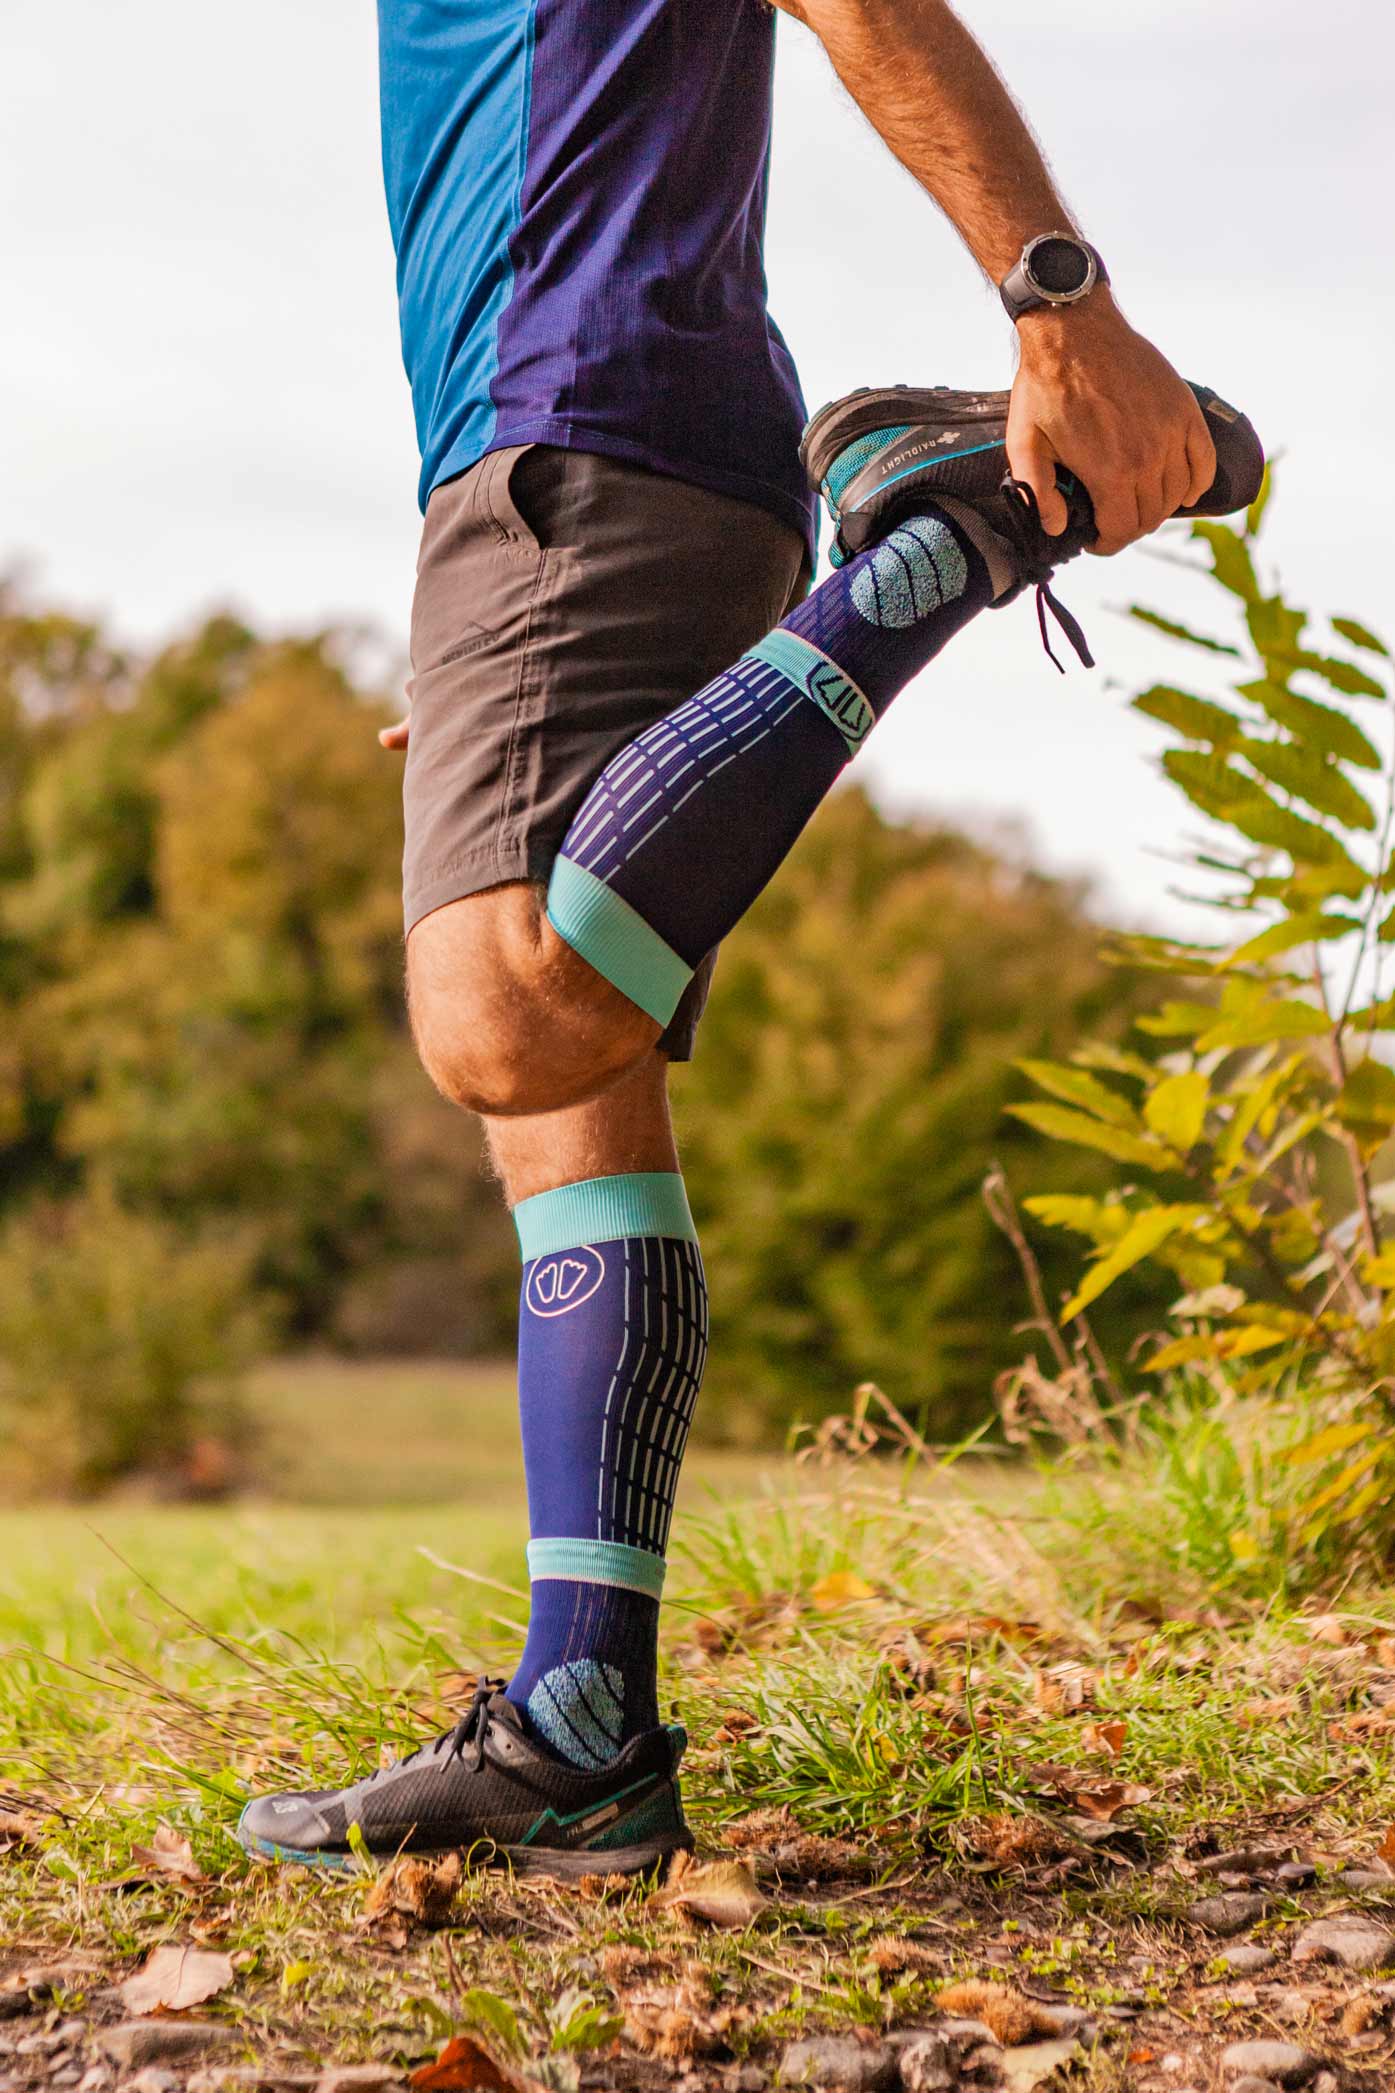 Cómo escoger unos buenos calcetines para correr - CMD Sport